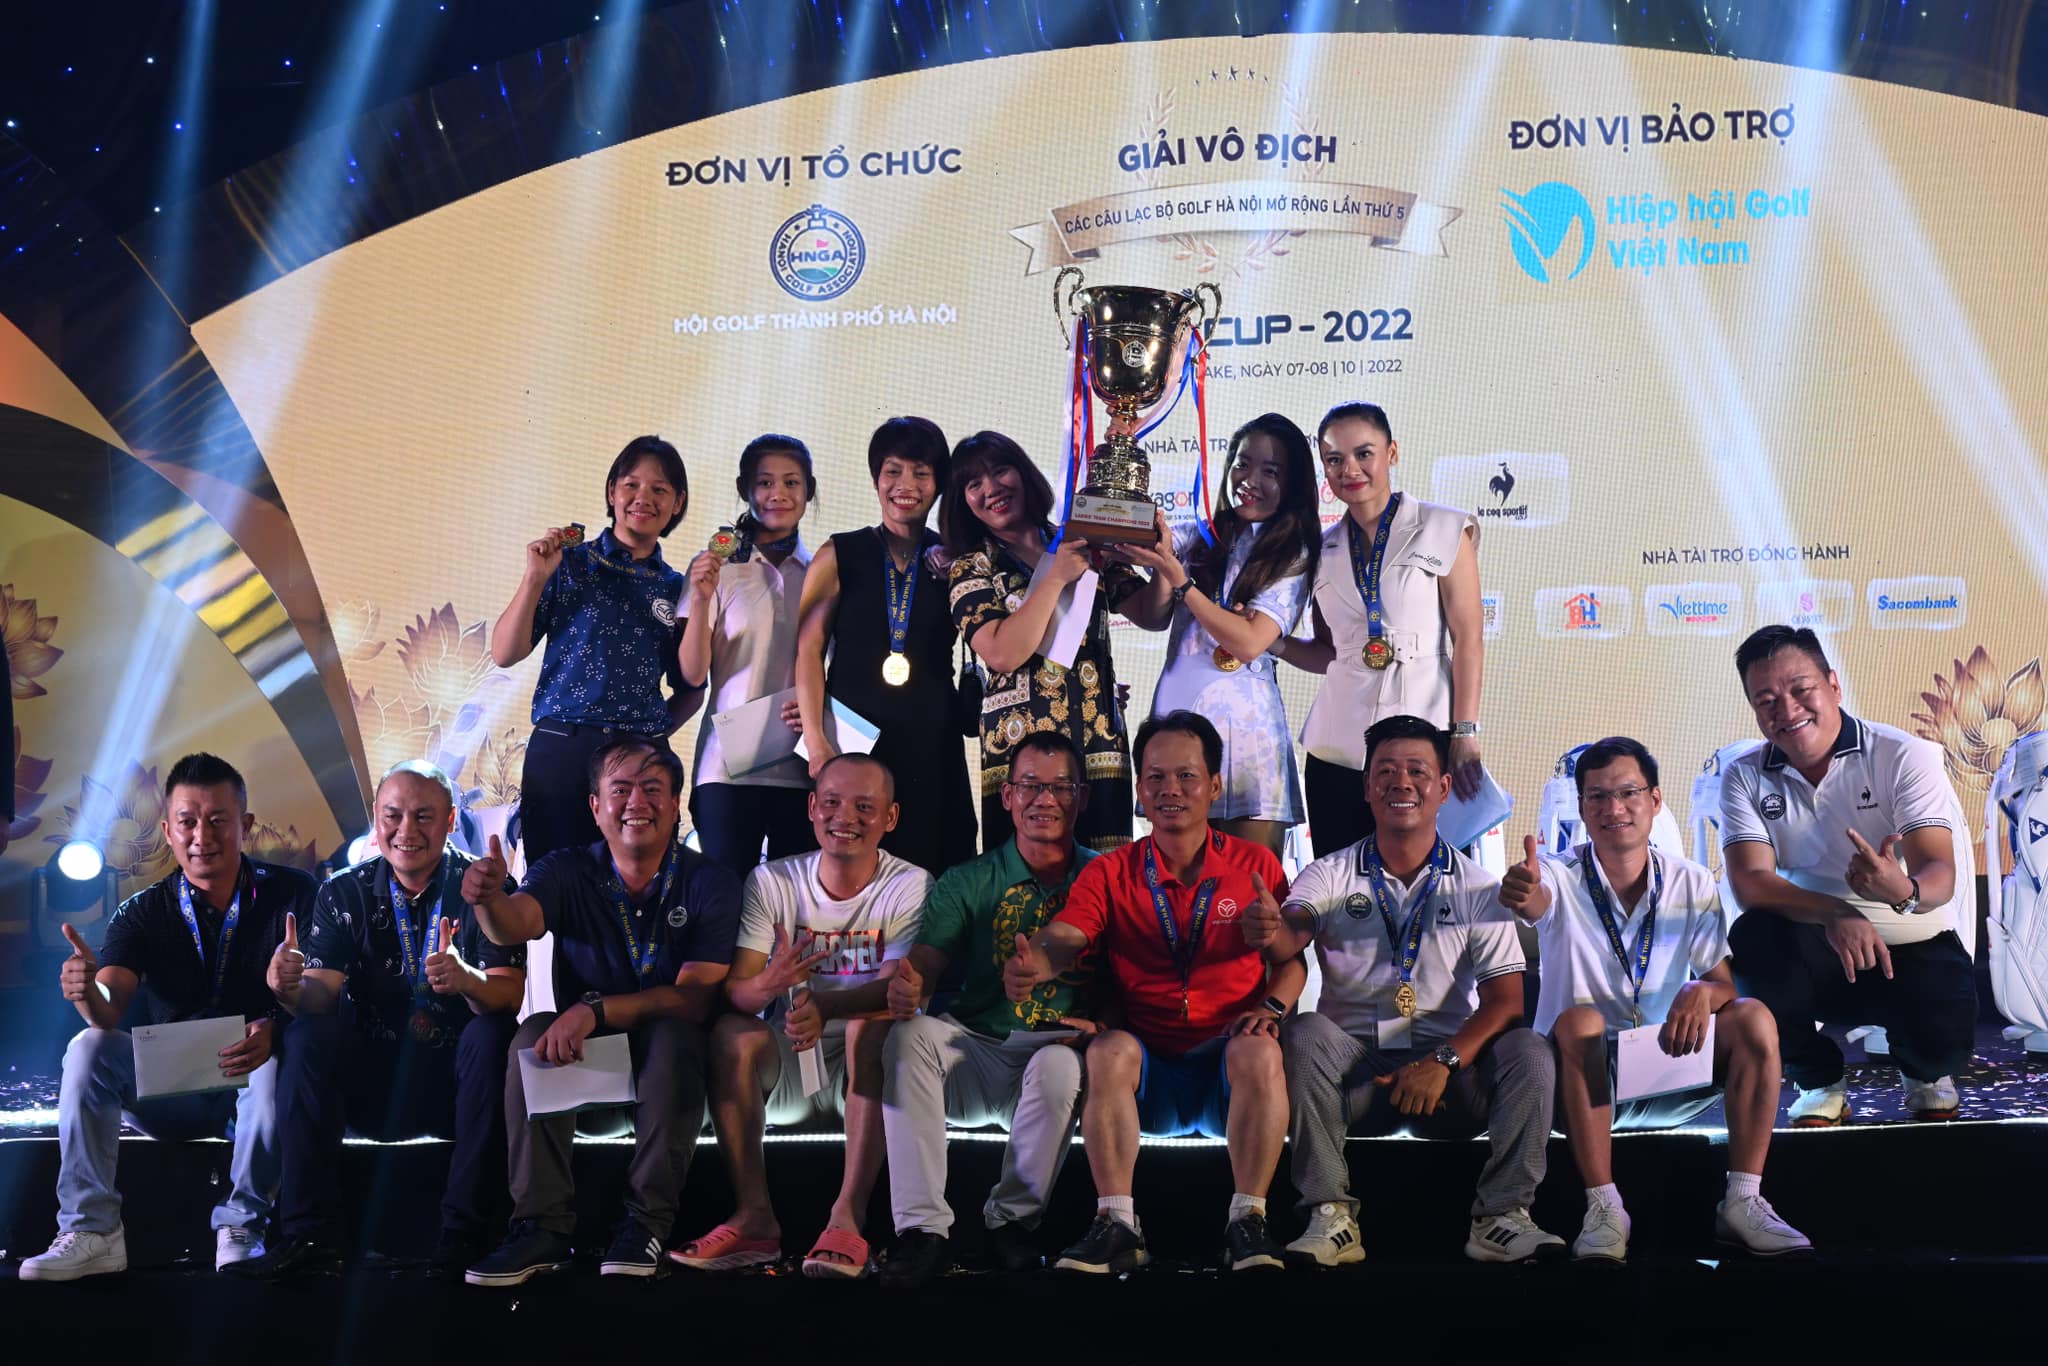 CLB golf nam G78 và CLB golf nữ ĐHQG lên ngôi vô địch tại VCK giải VĐ các CLB golf Hà Nội Mở rộng lần thứ 5 - PING Cup 2022